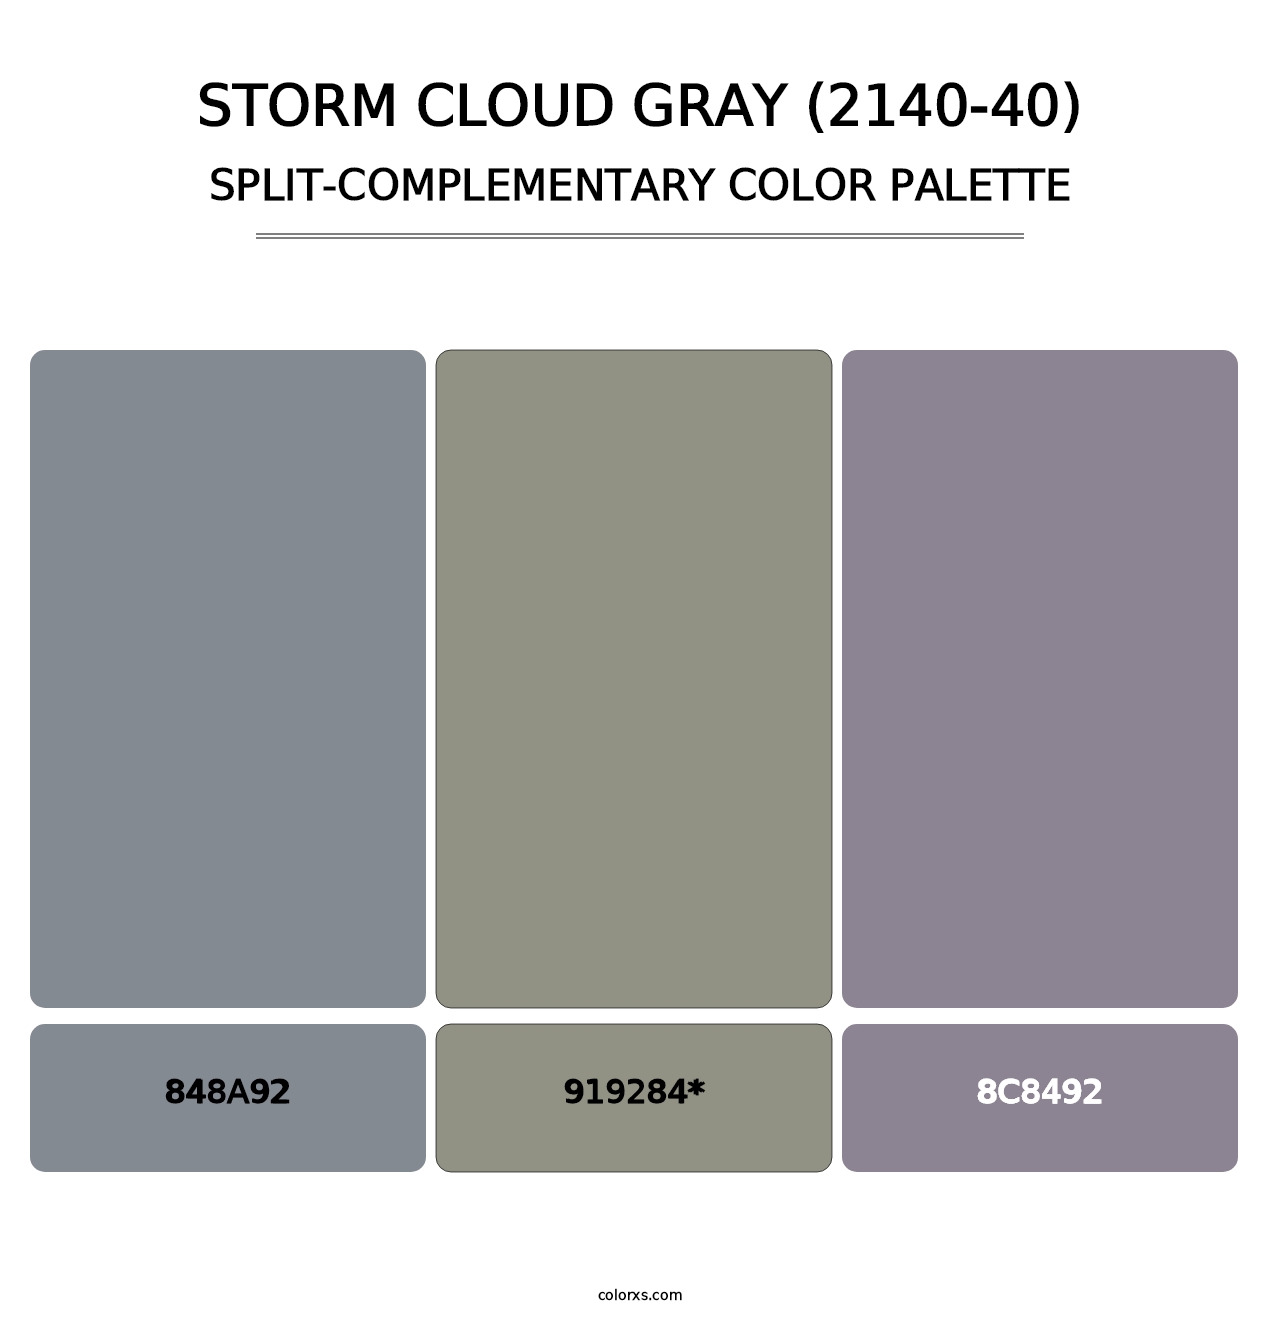 Storm Cloud Gray (2140-40) - Split-Complementary Color Palette